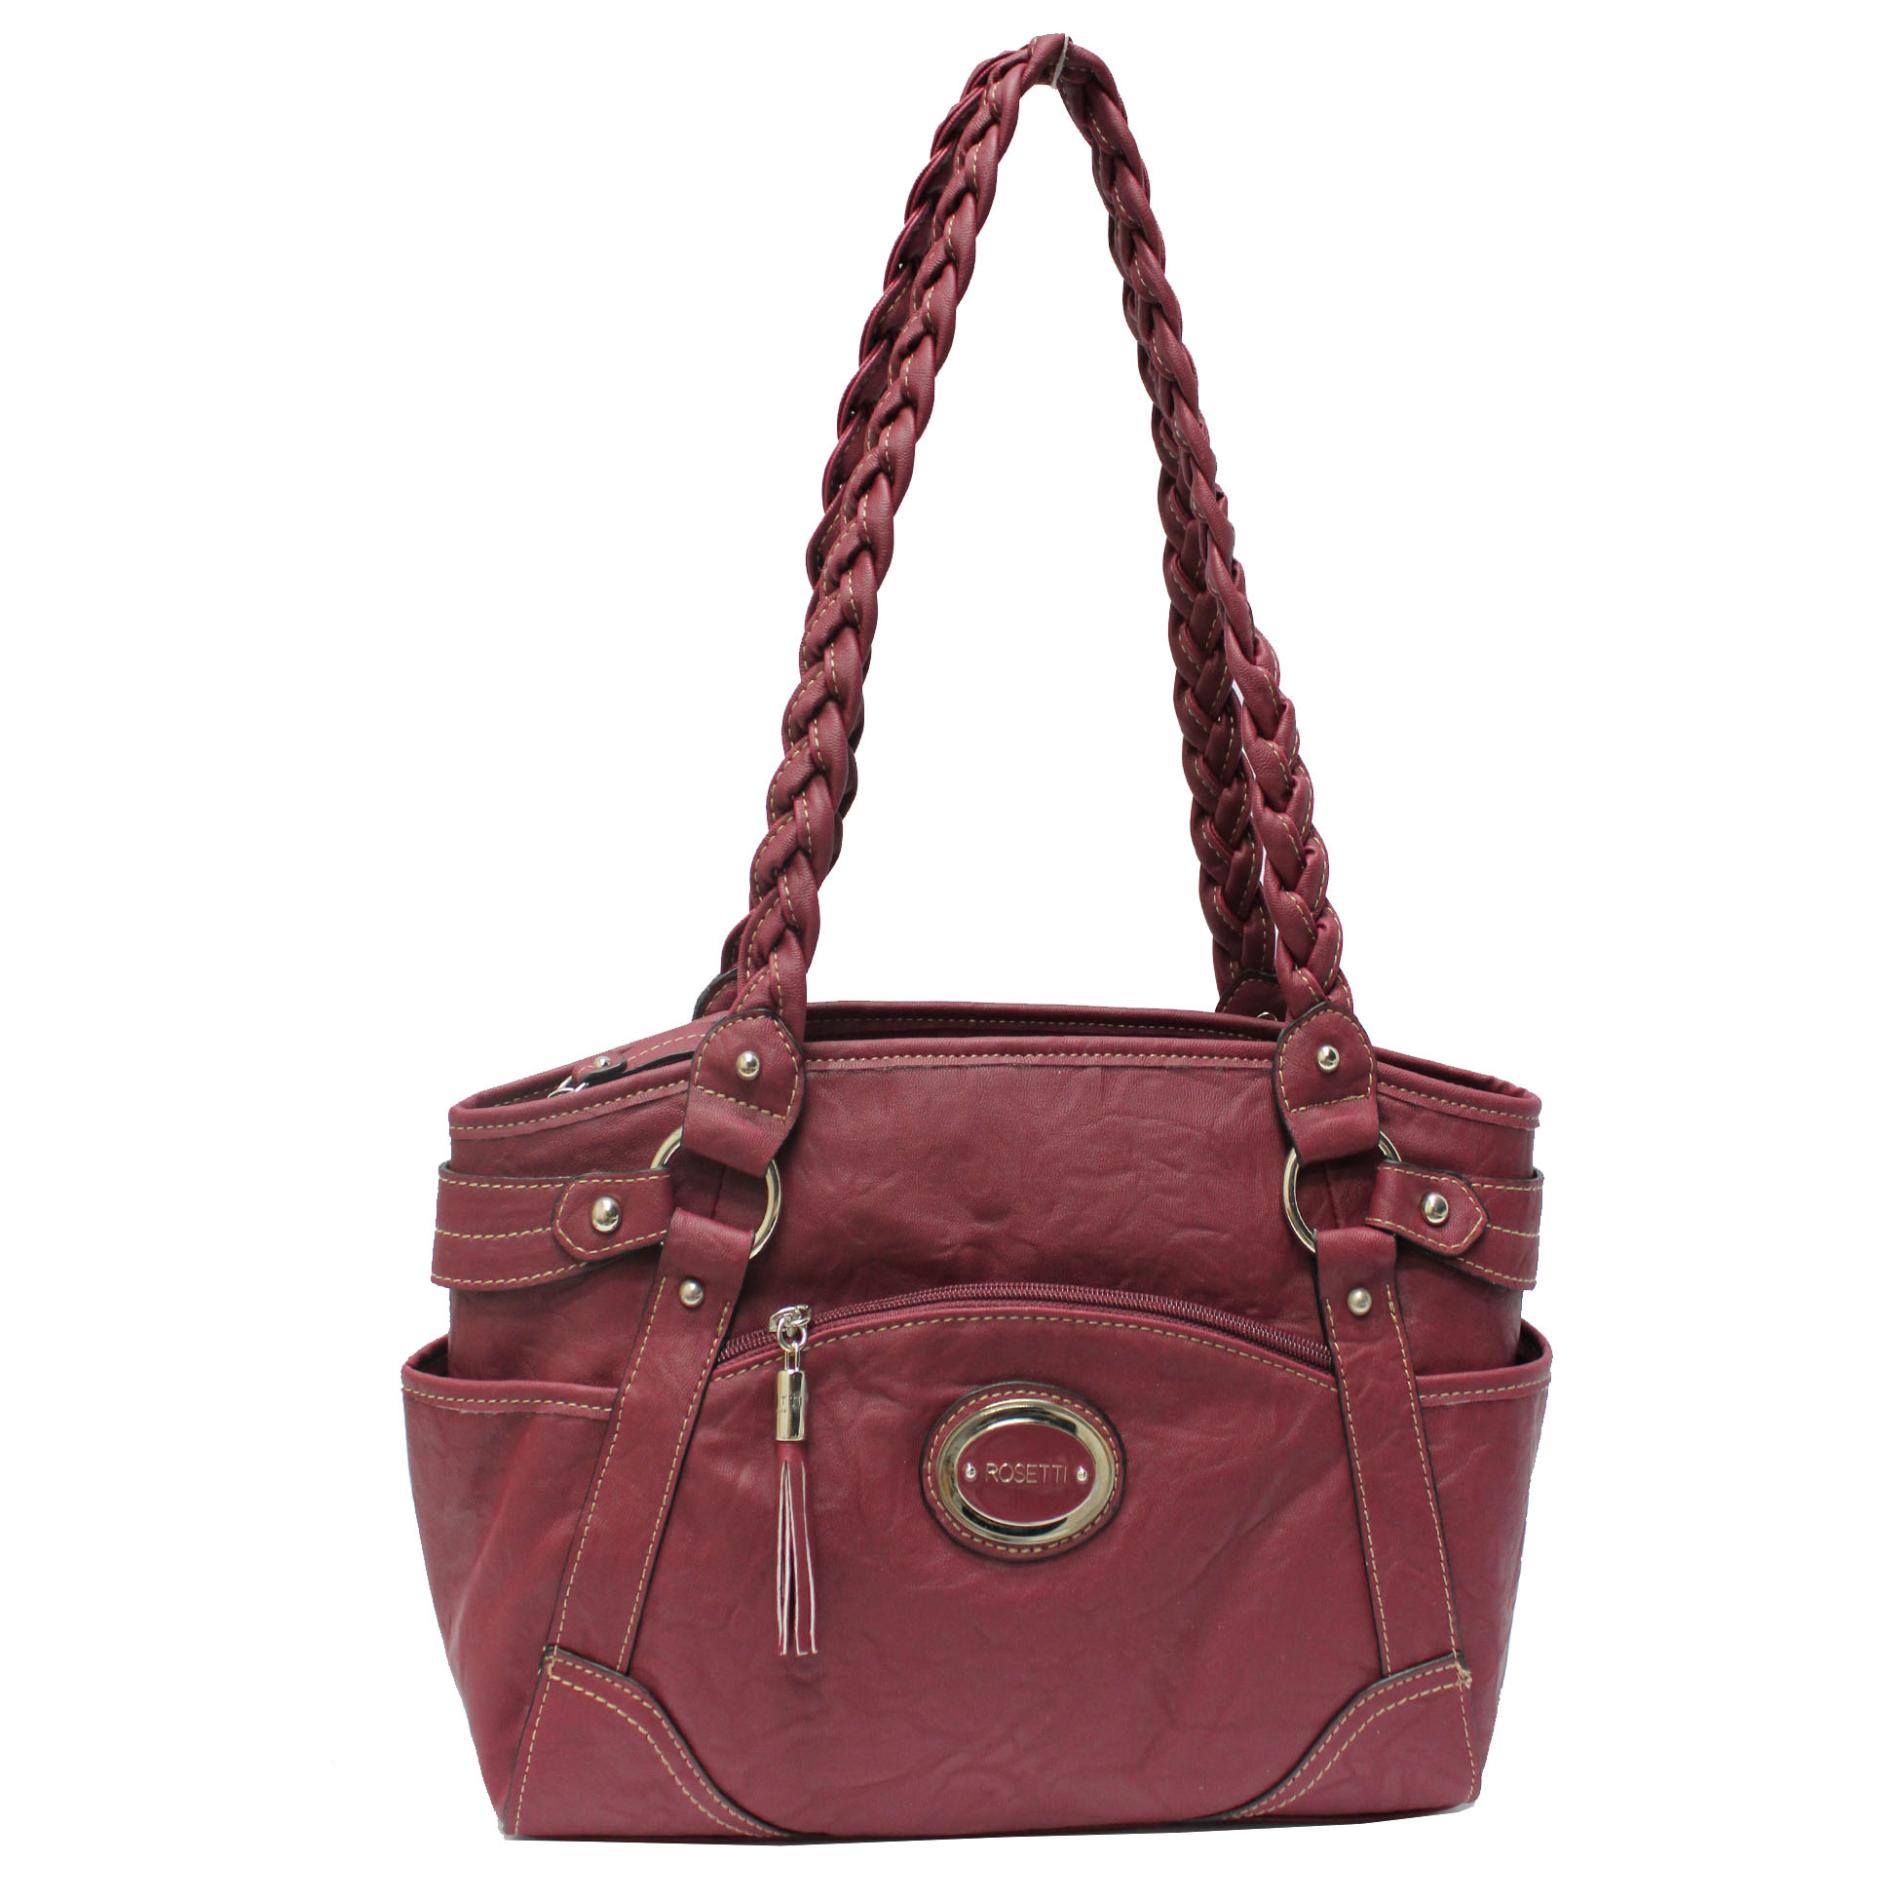 Rosetti Women's Spring Forward Satchel Bag